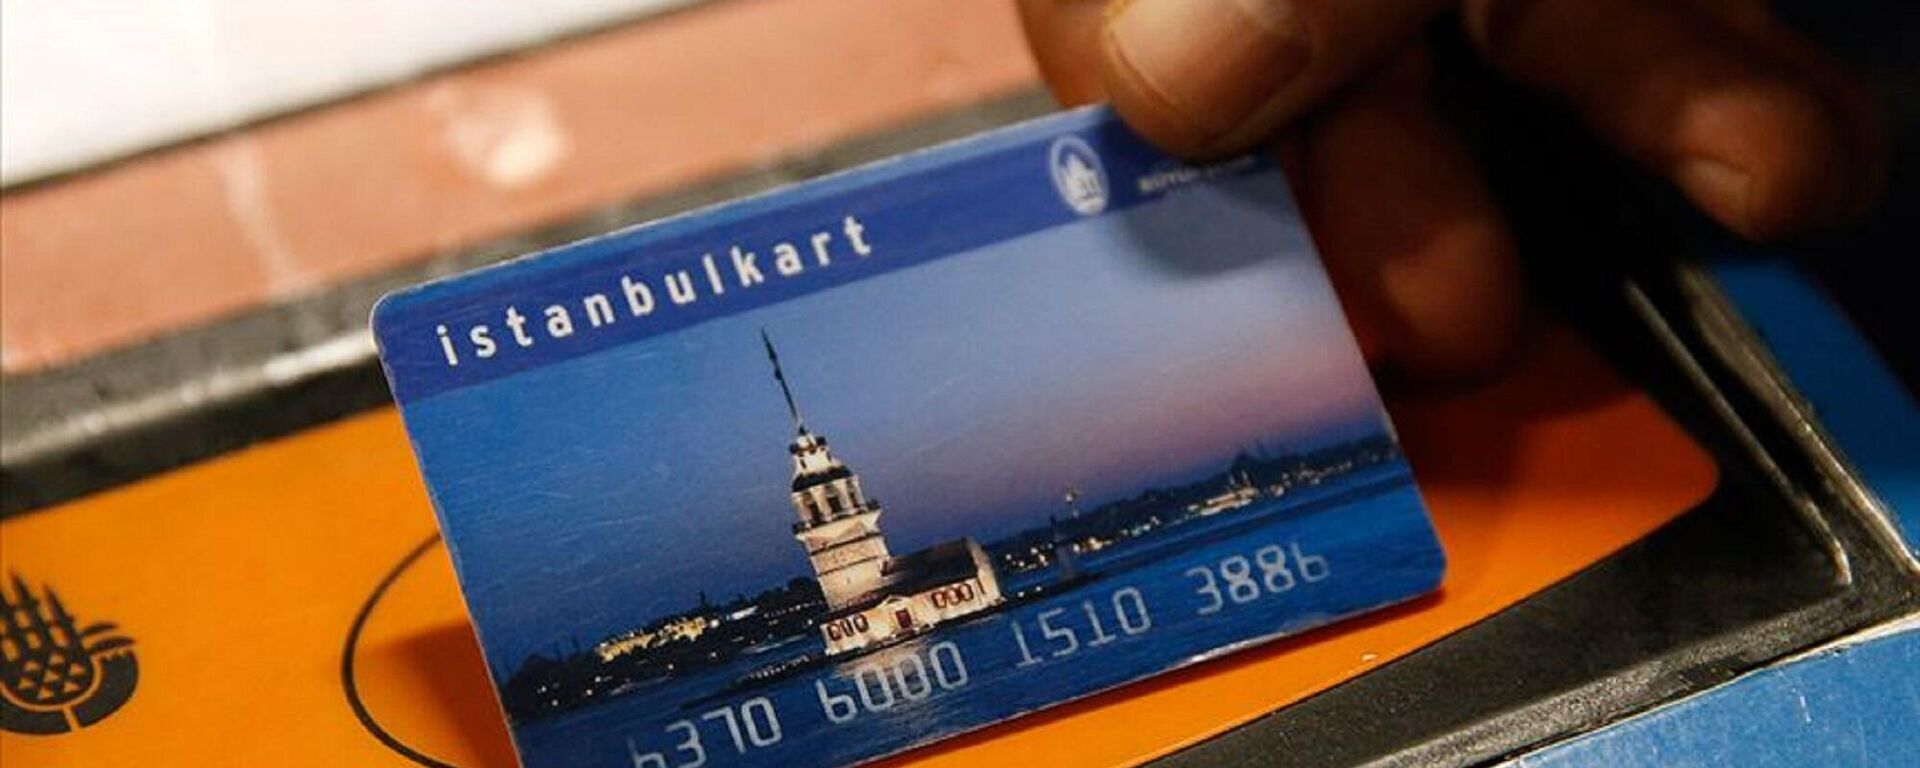 İstanbulKart  - Sputnik Türkiye, 1920, 17.08.2022